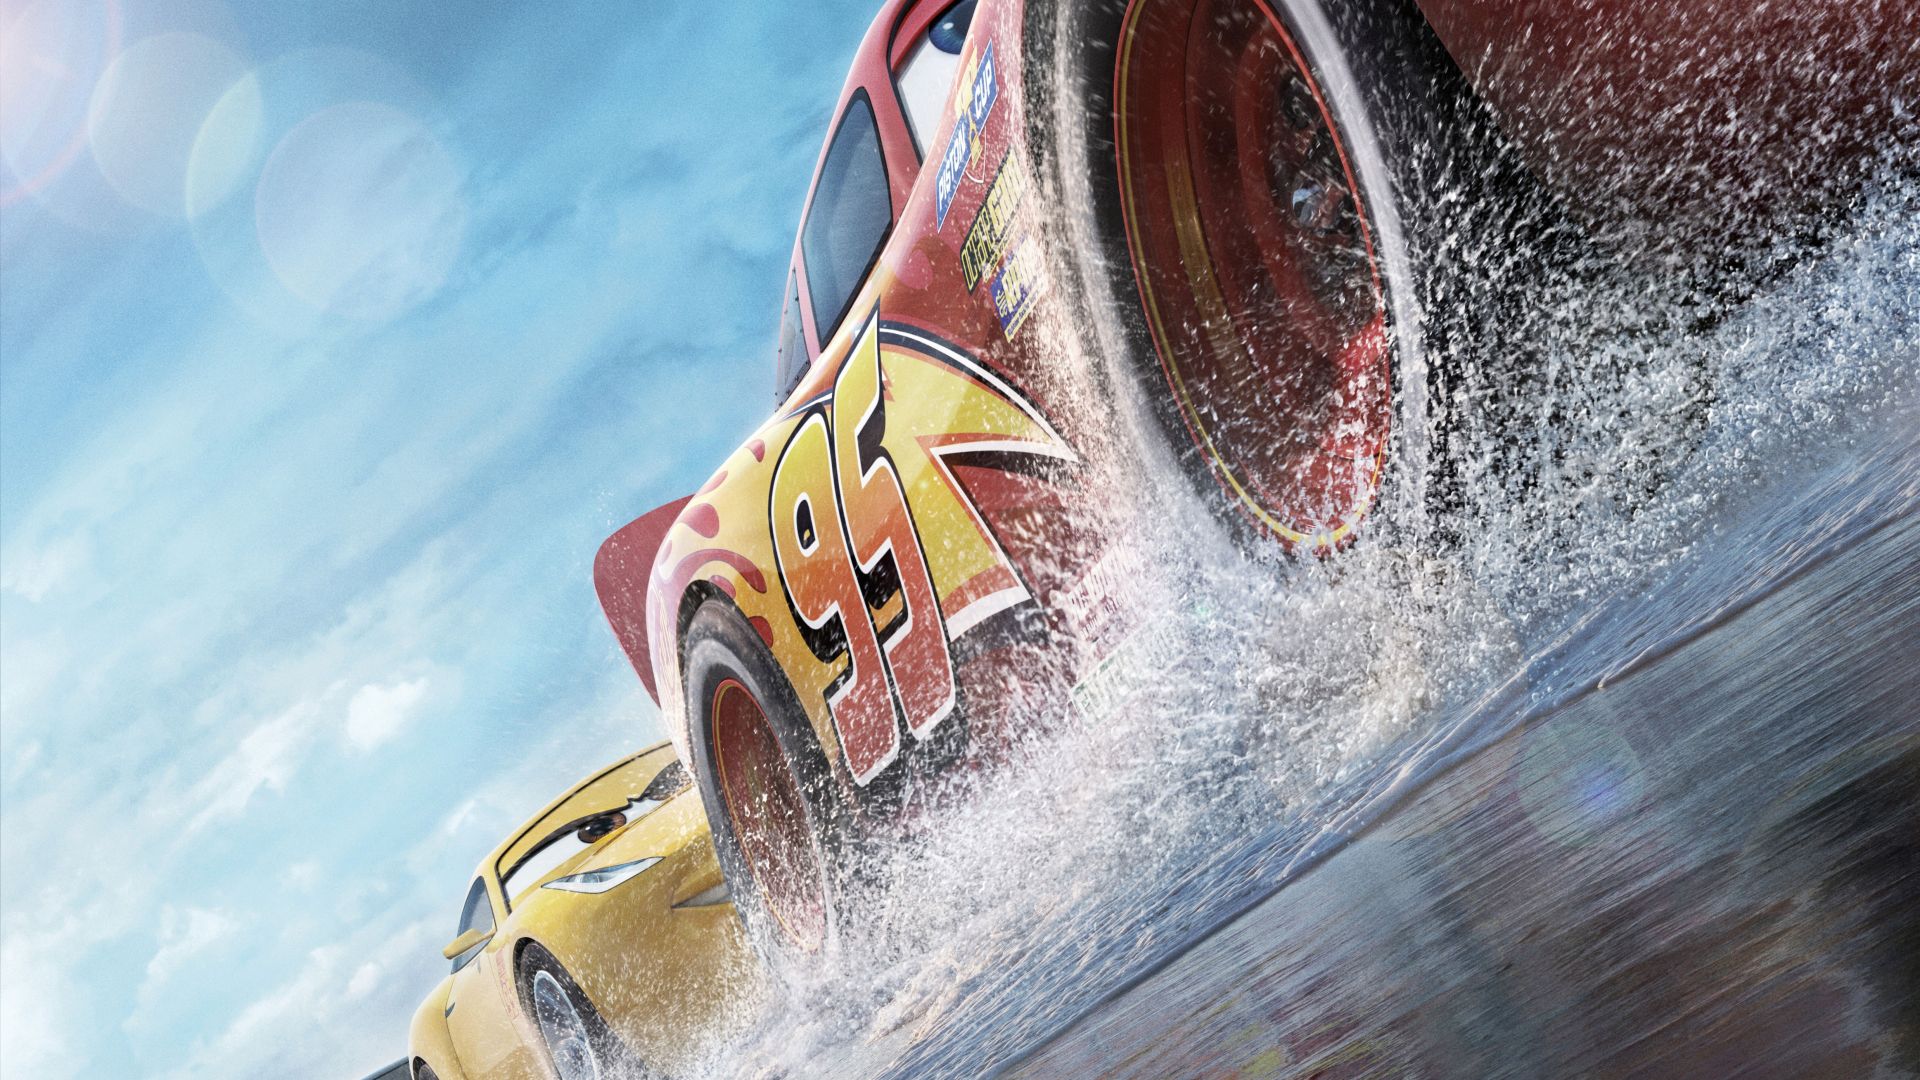 Тачки 3, Cars 3, 4k, Lightning McQueen, 5k, poster (horizontal)